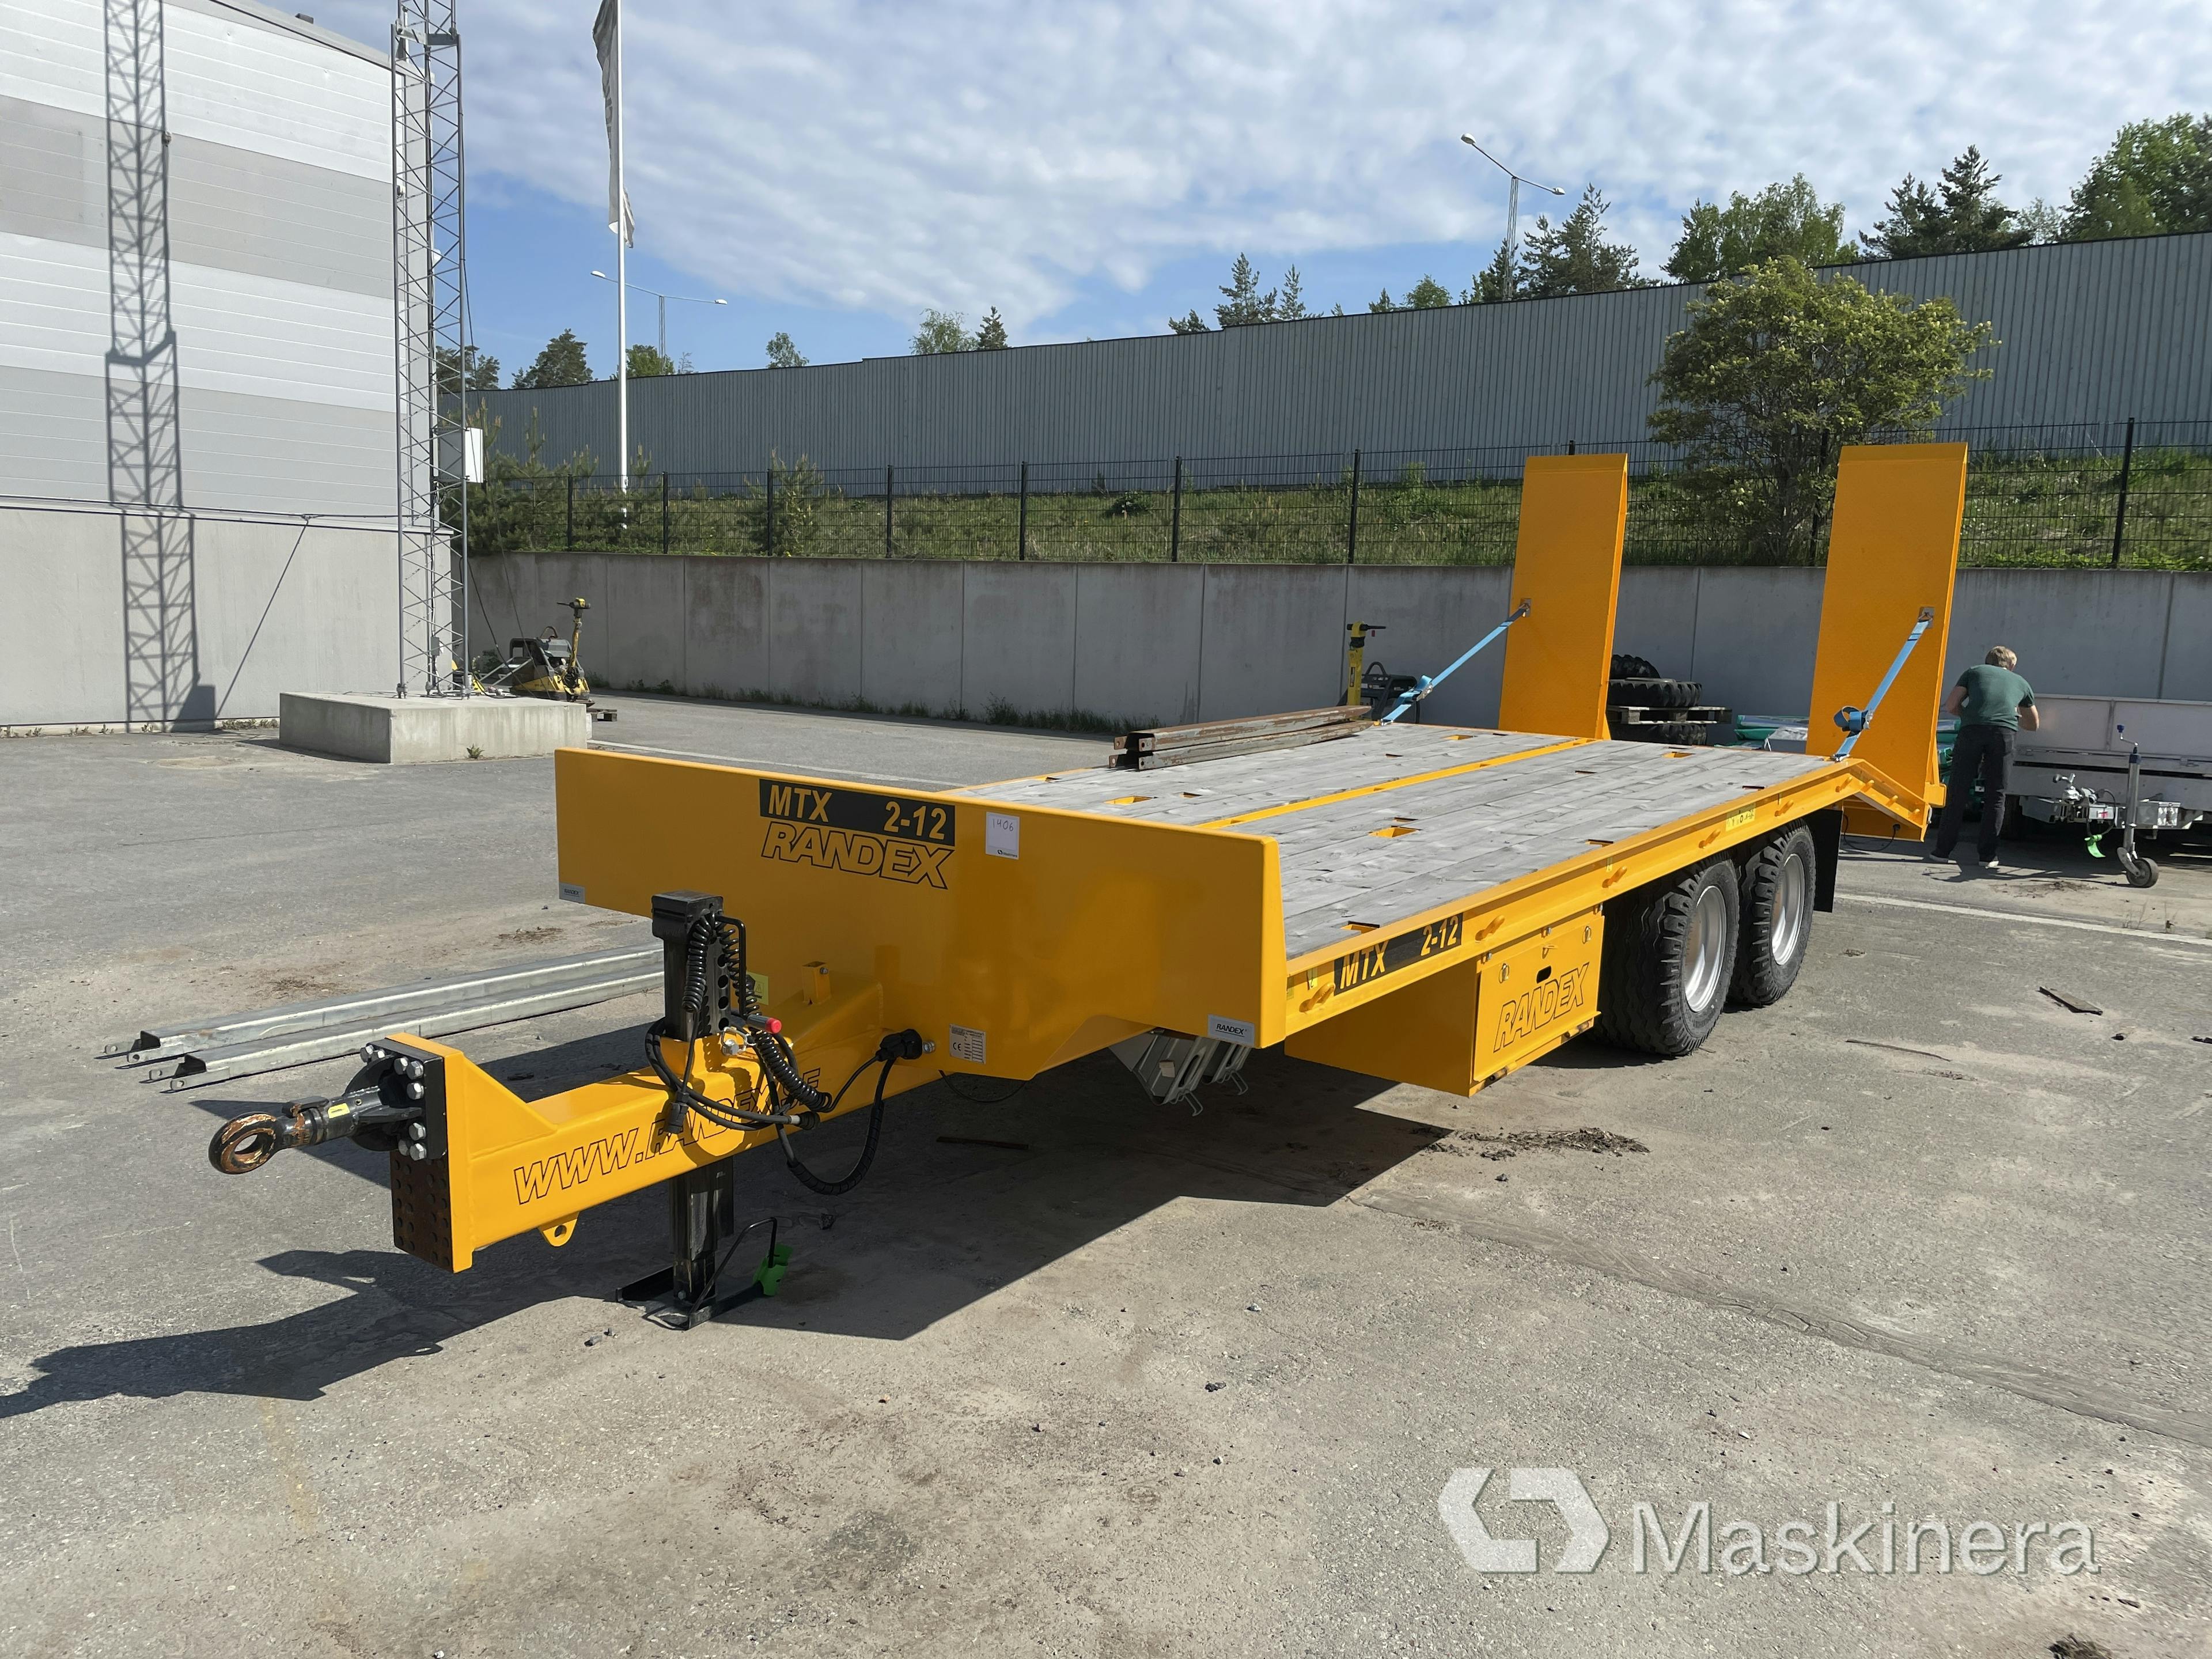 Machine trailer Randex MTX 2-12